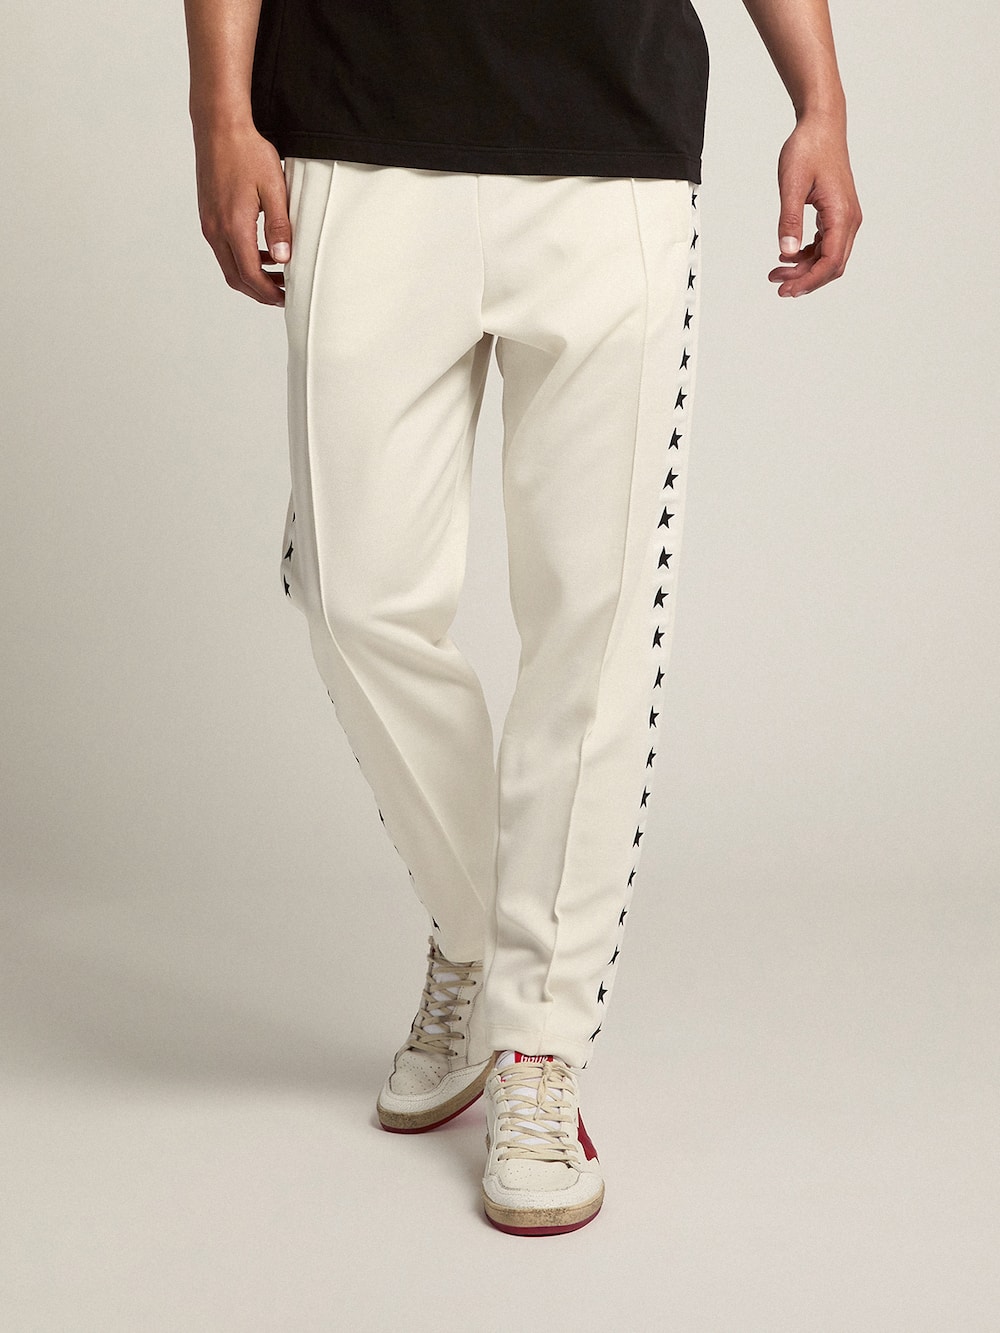 Golden Goose - Pantalon de jogging homme blanc avec étoiles noires sur les côtés in 